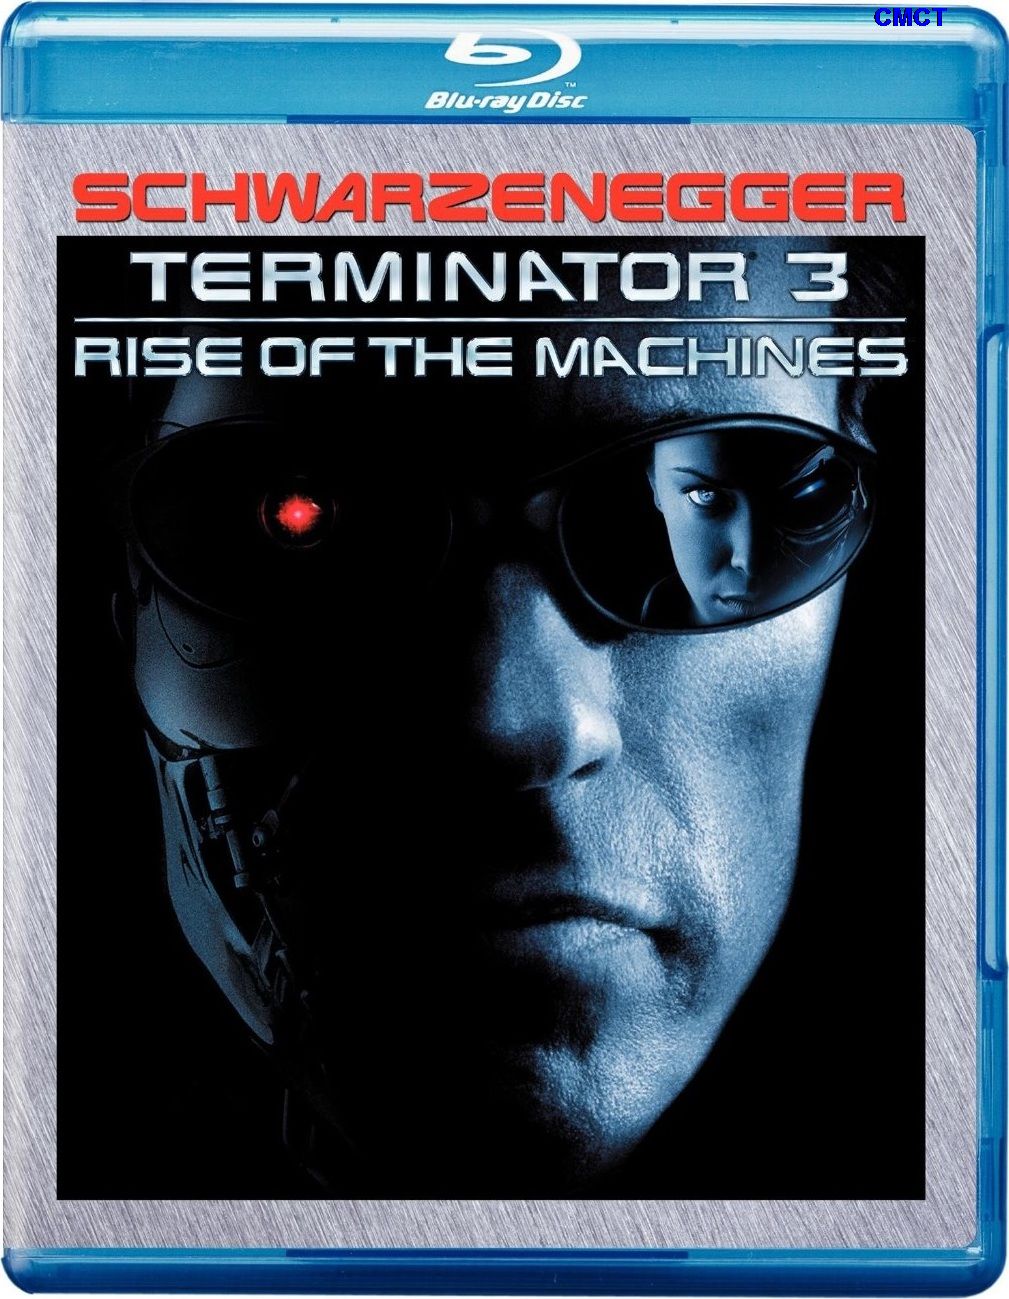 终结者3: 机器的觉醒  [DIY国语次世代 简体繁体特效/简英繁英双语/PIP中字/双导评中字] Terminator.3.Rise.of.the.Machines.2003.Blu-ray.1080p.AVC.TrueHD5.1-CMCT[35.90 GB ]-1.jpg